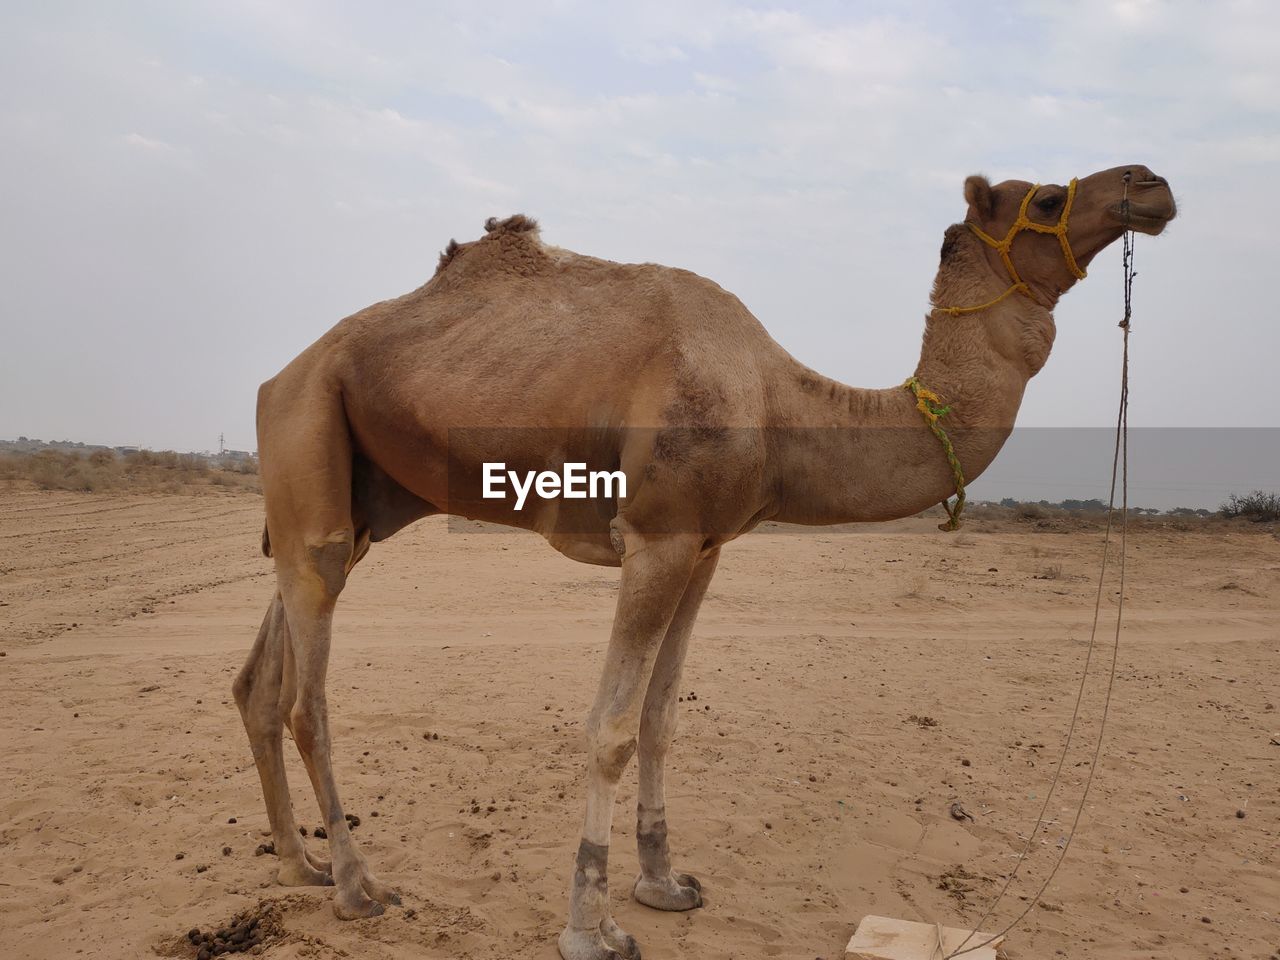 A beautiful camel safari photography